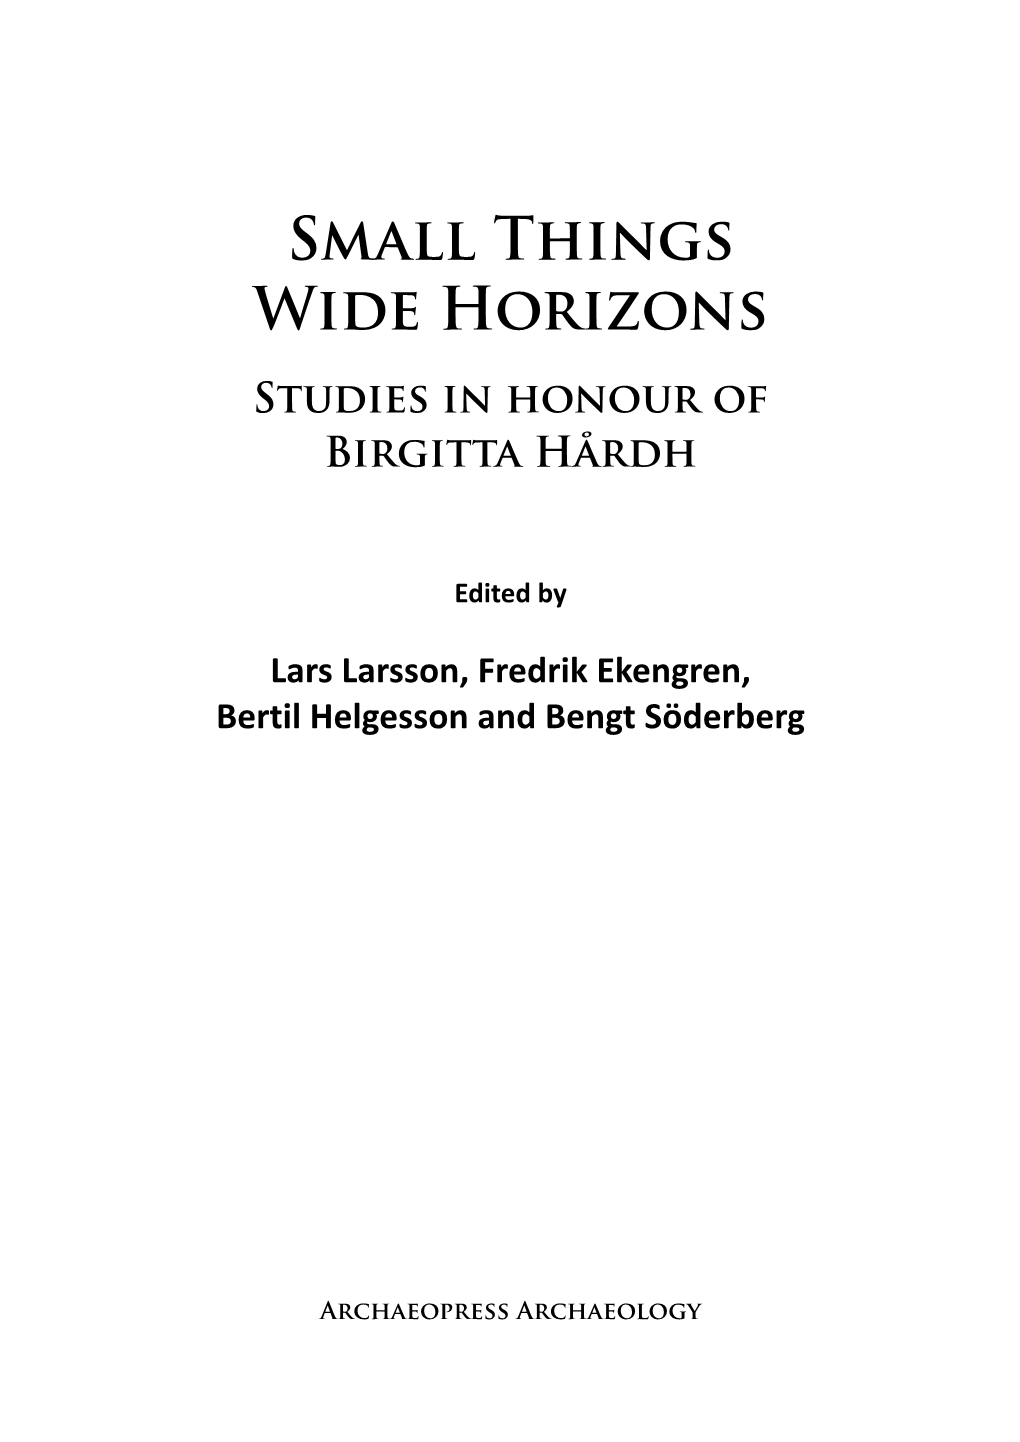 Small Things Wide Horizons Studies in Honour of Birgitta Hårdh